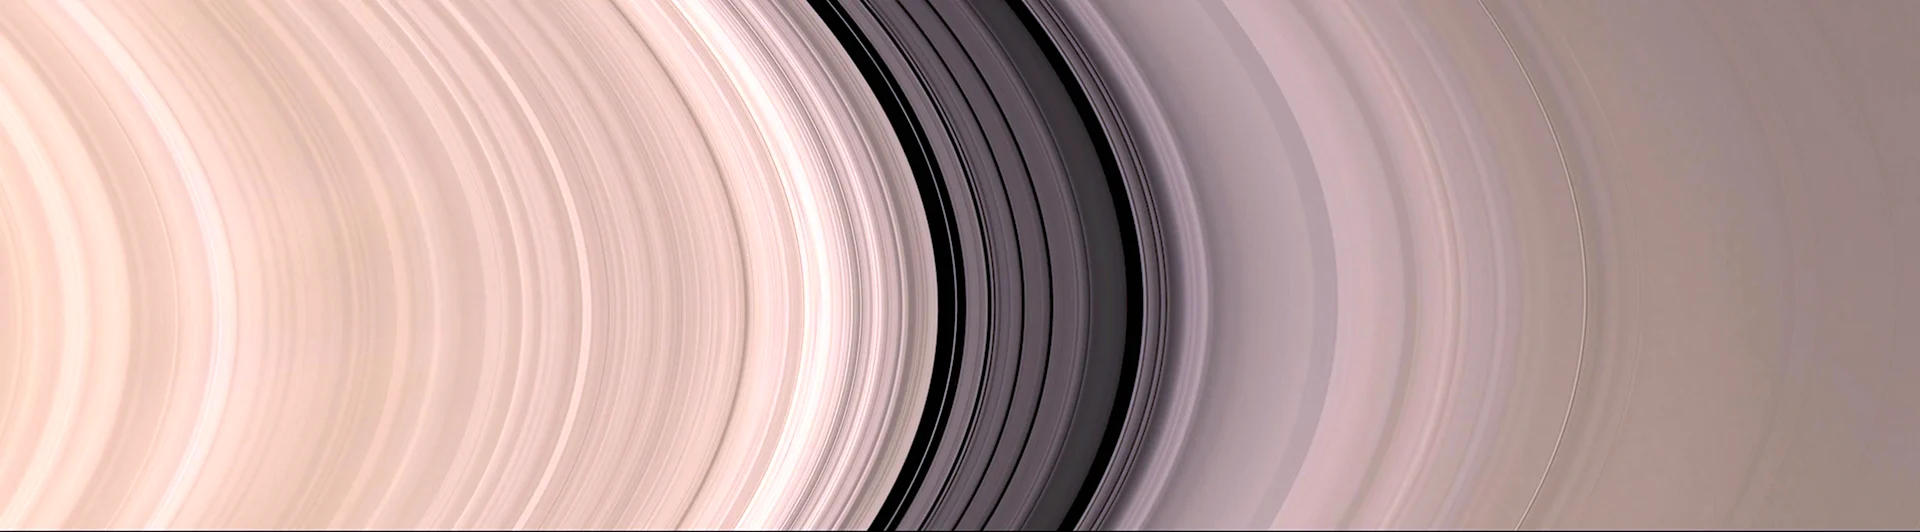 Развертка планеты Сатурн